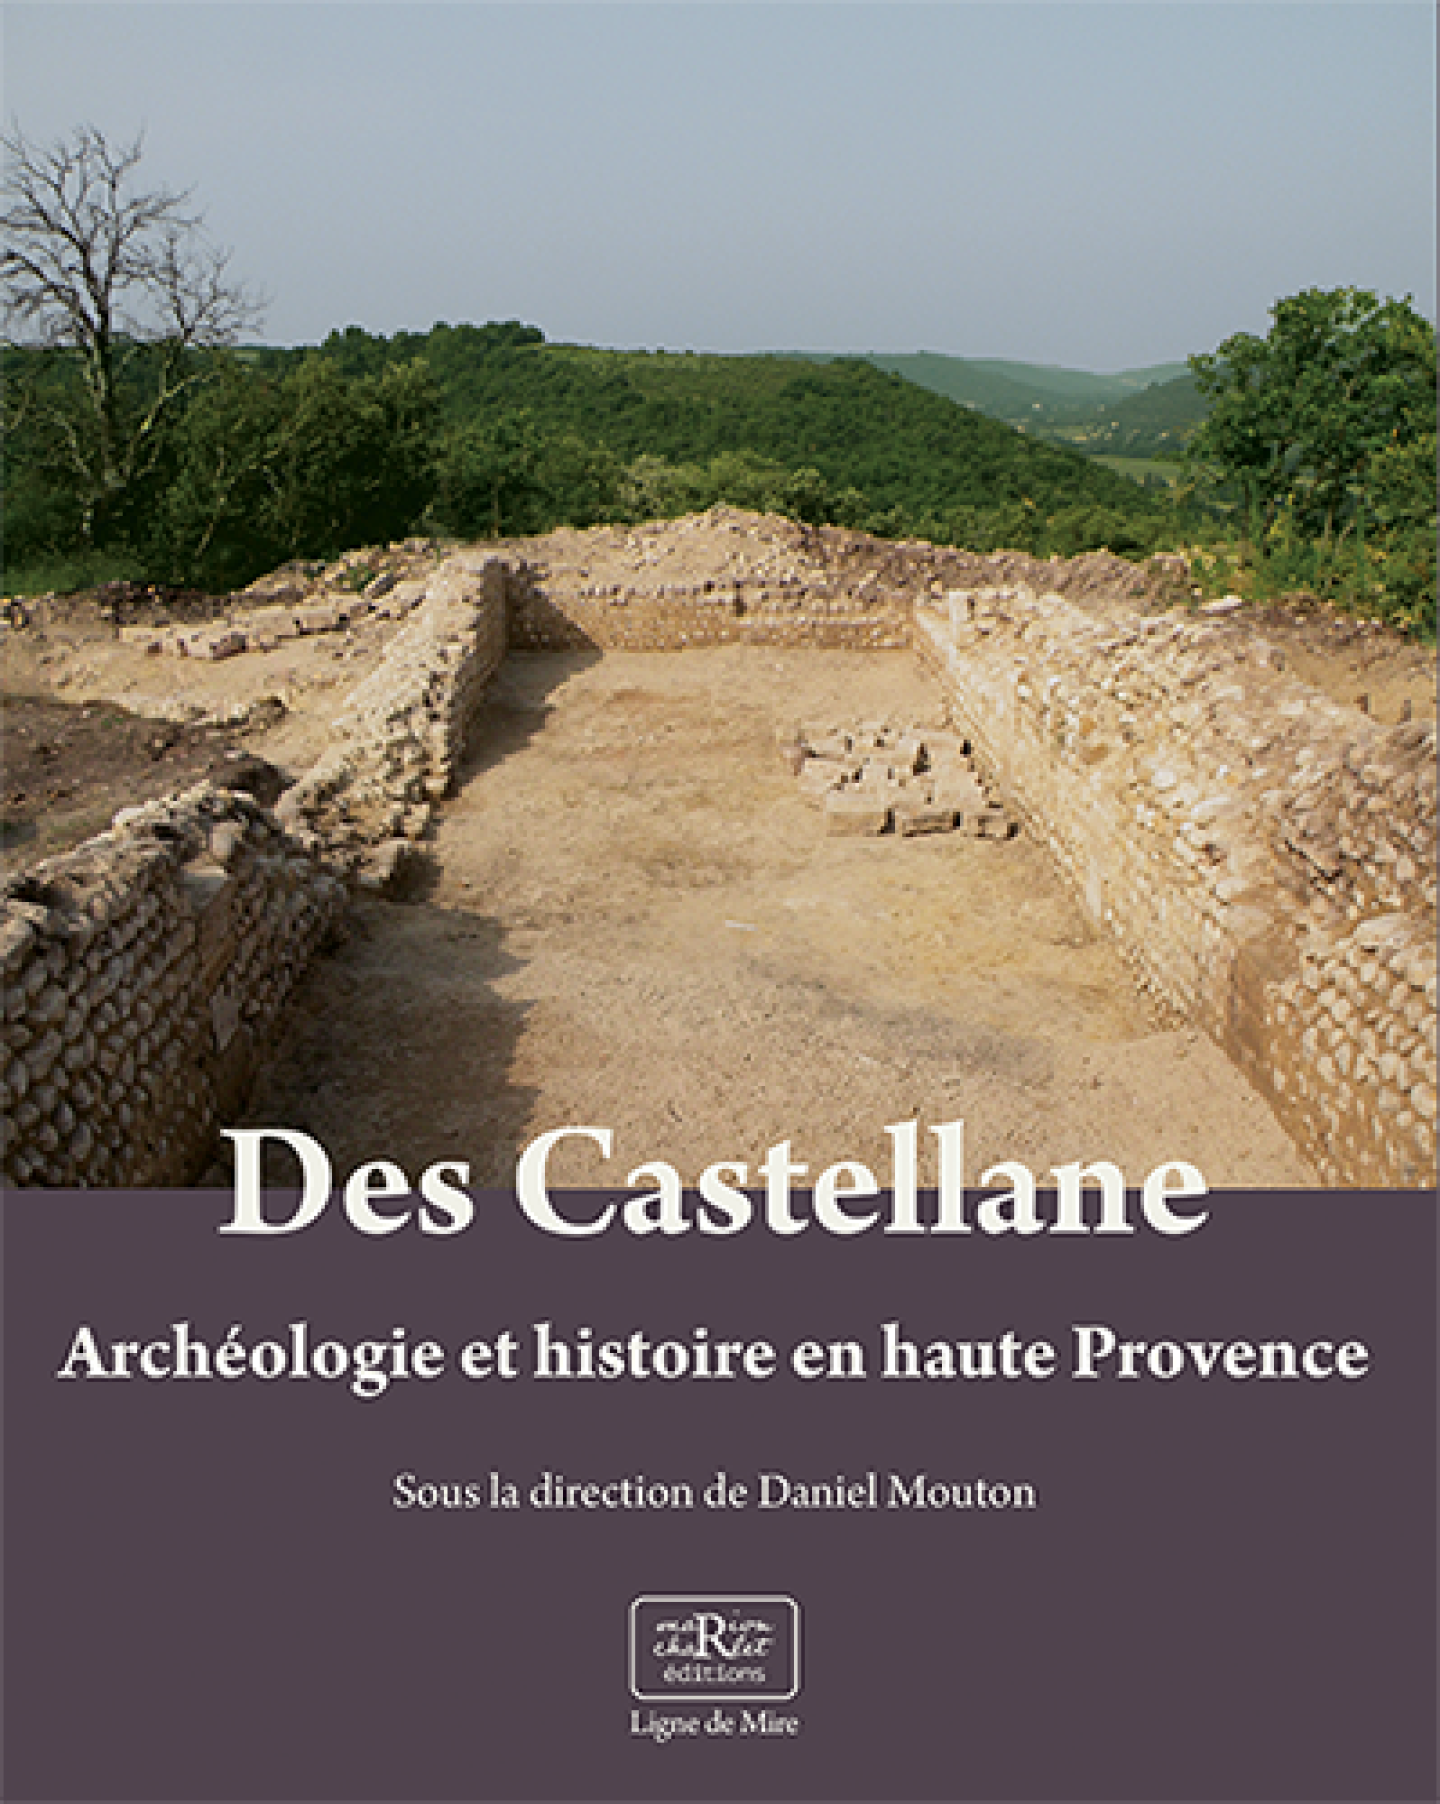 Des Castellane, archéologie et histoire en haute Provence